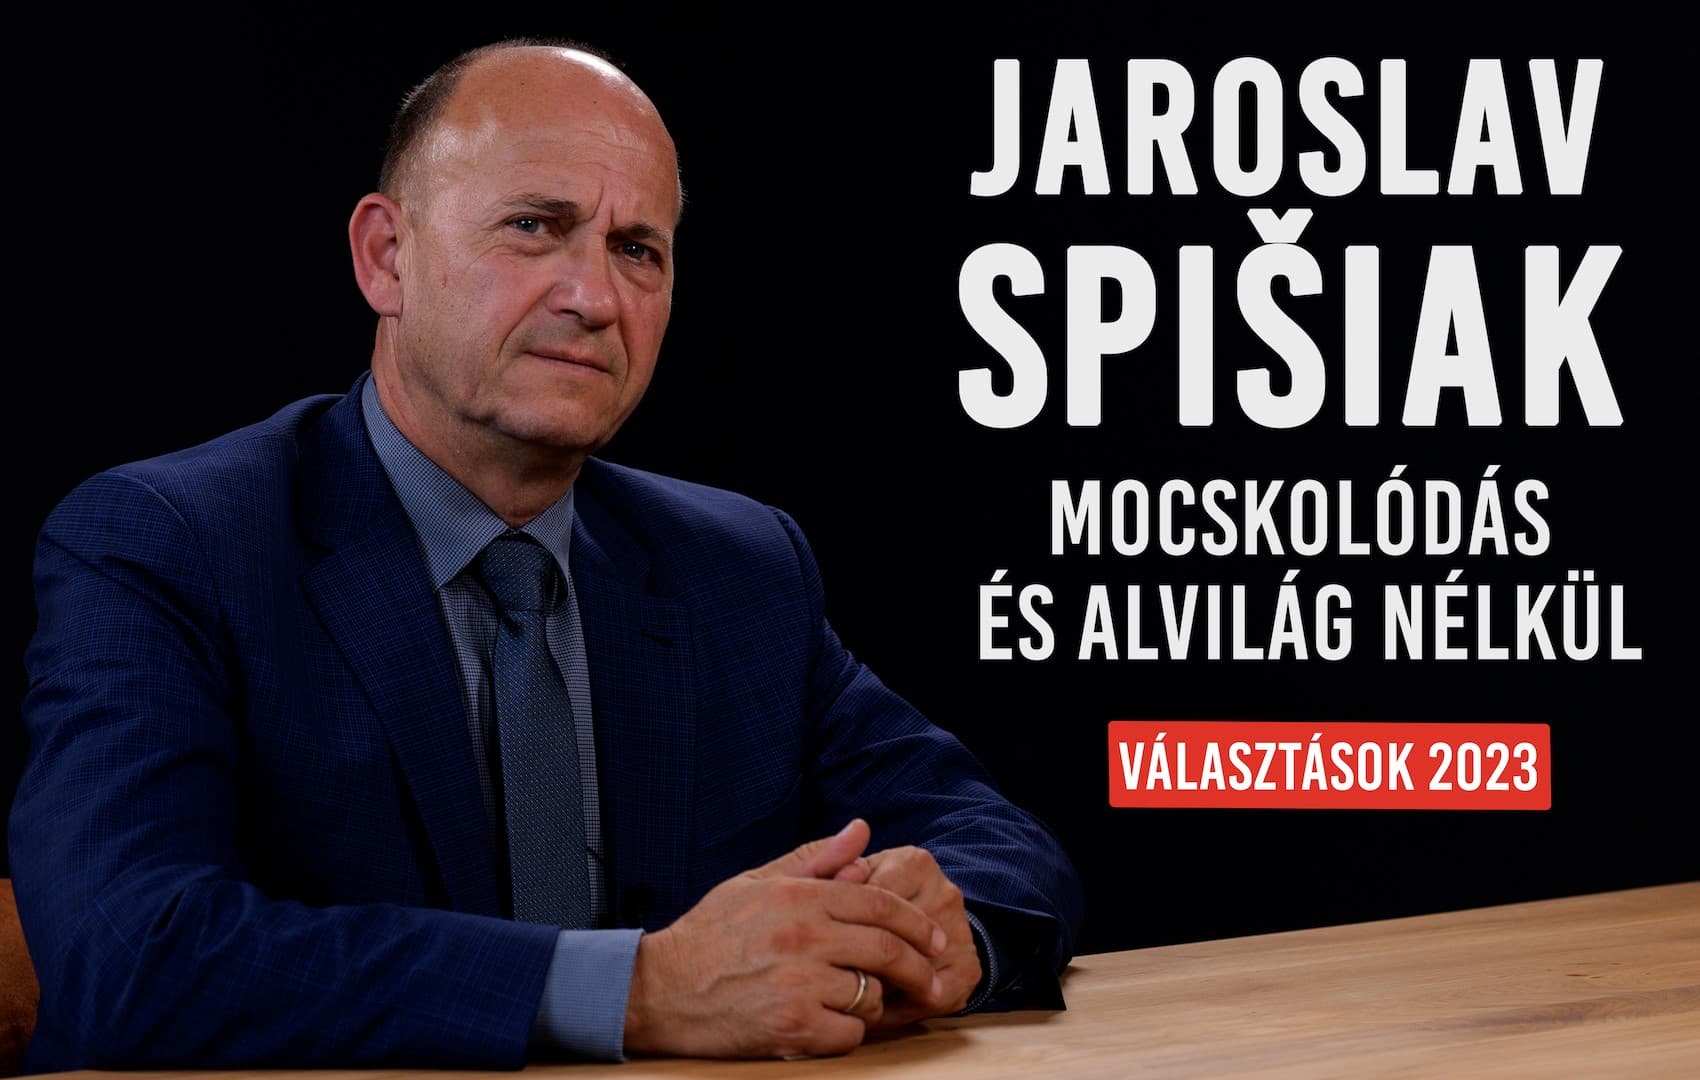 JAROSLAV SPIŠIAK: "Megszüntetni a korrupciót és a káoszt, ez a cél" – VÁLASZTÁSOK 2023